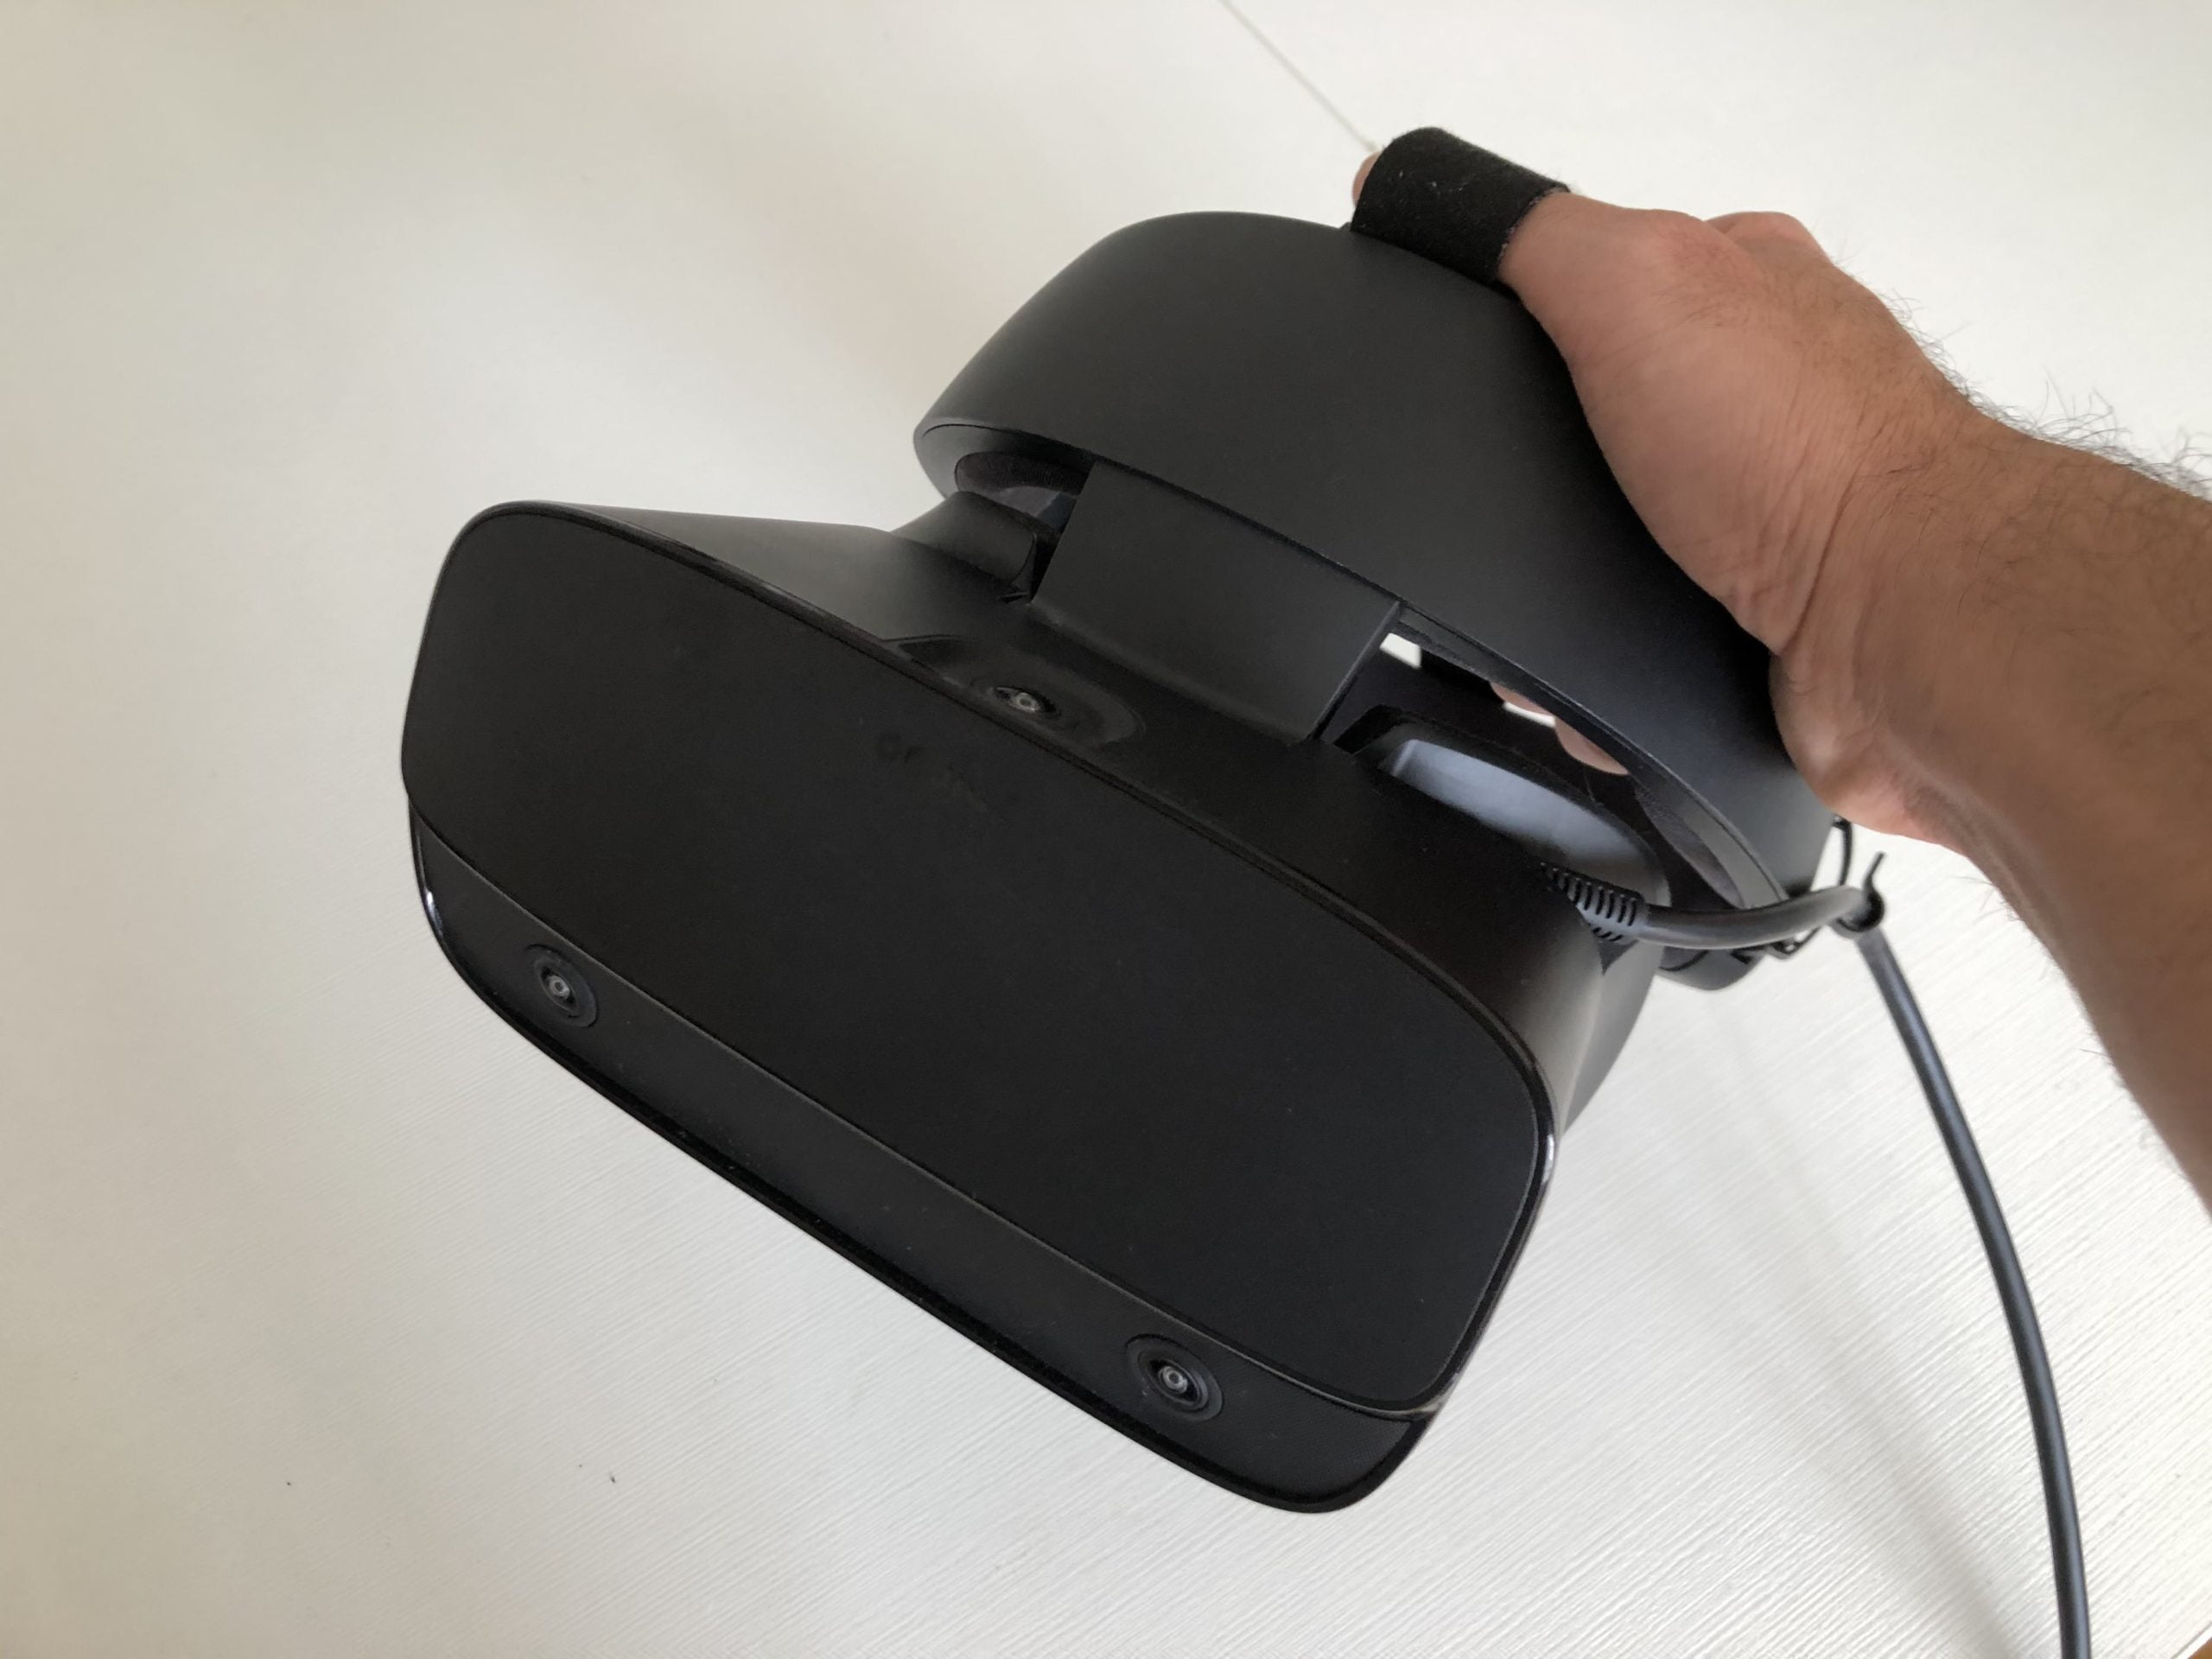 VR-Brille Oculus Rift S in der Nahansicht.